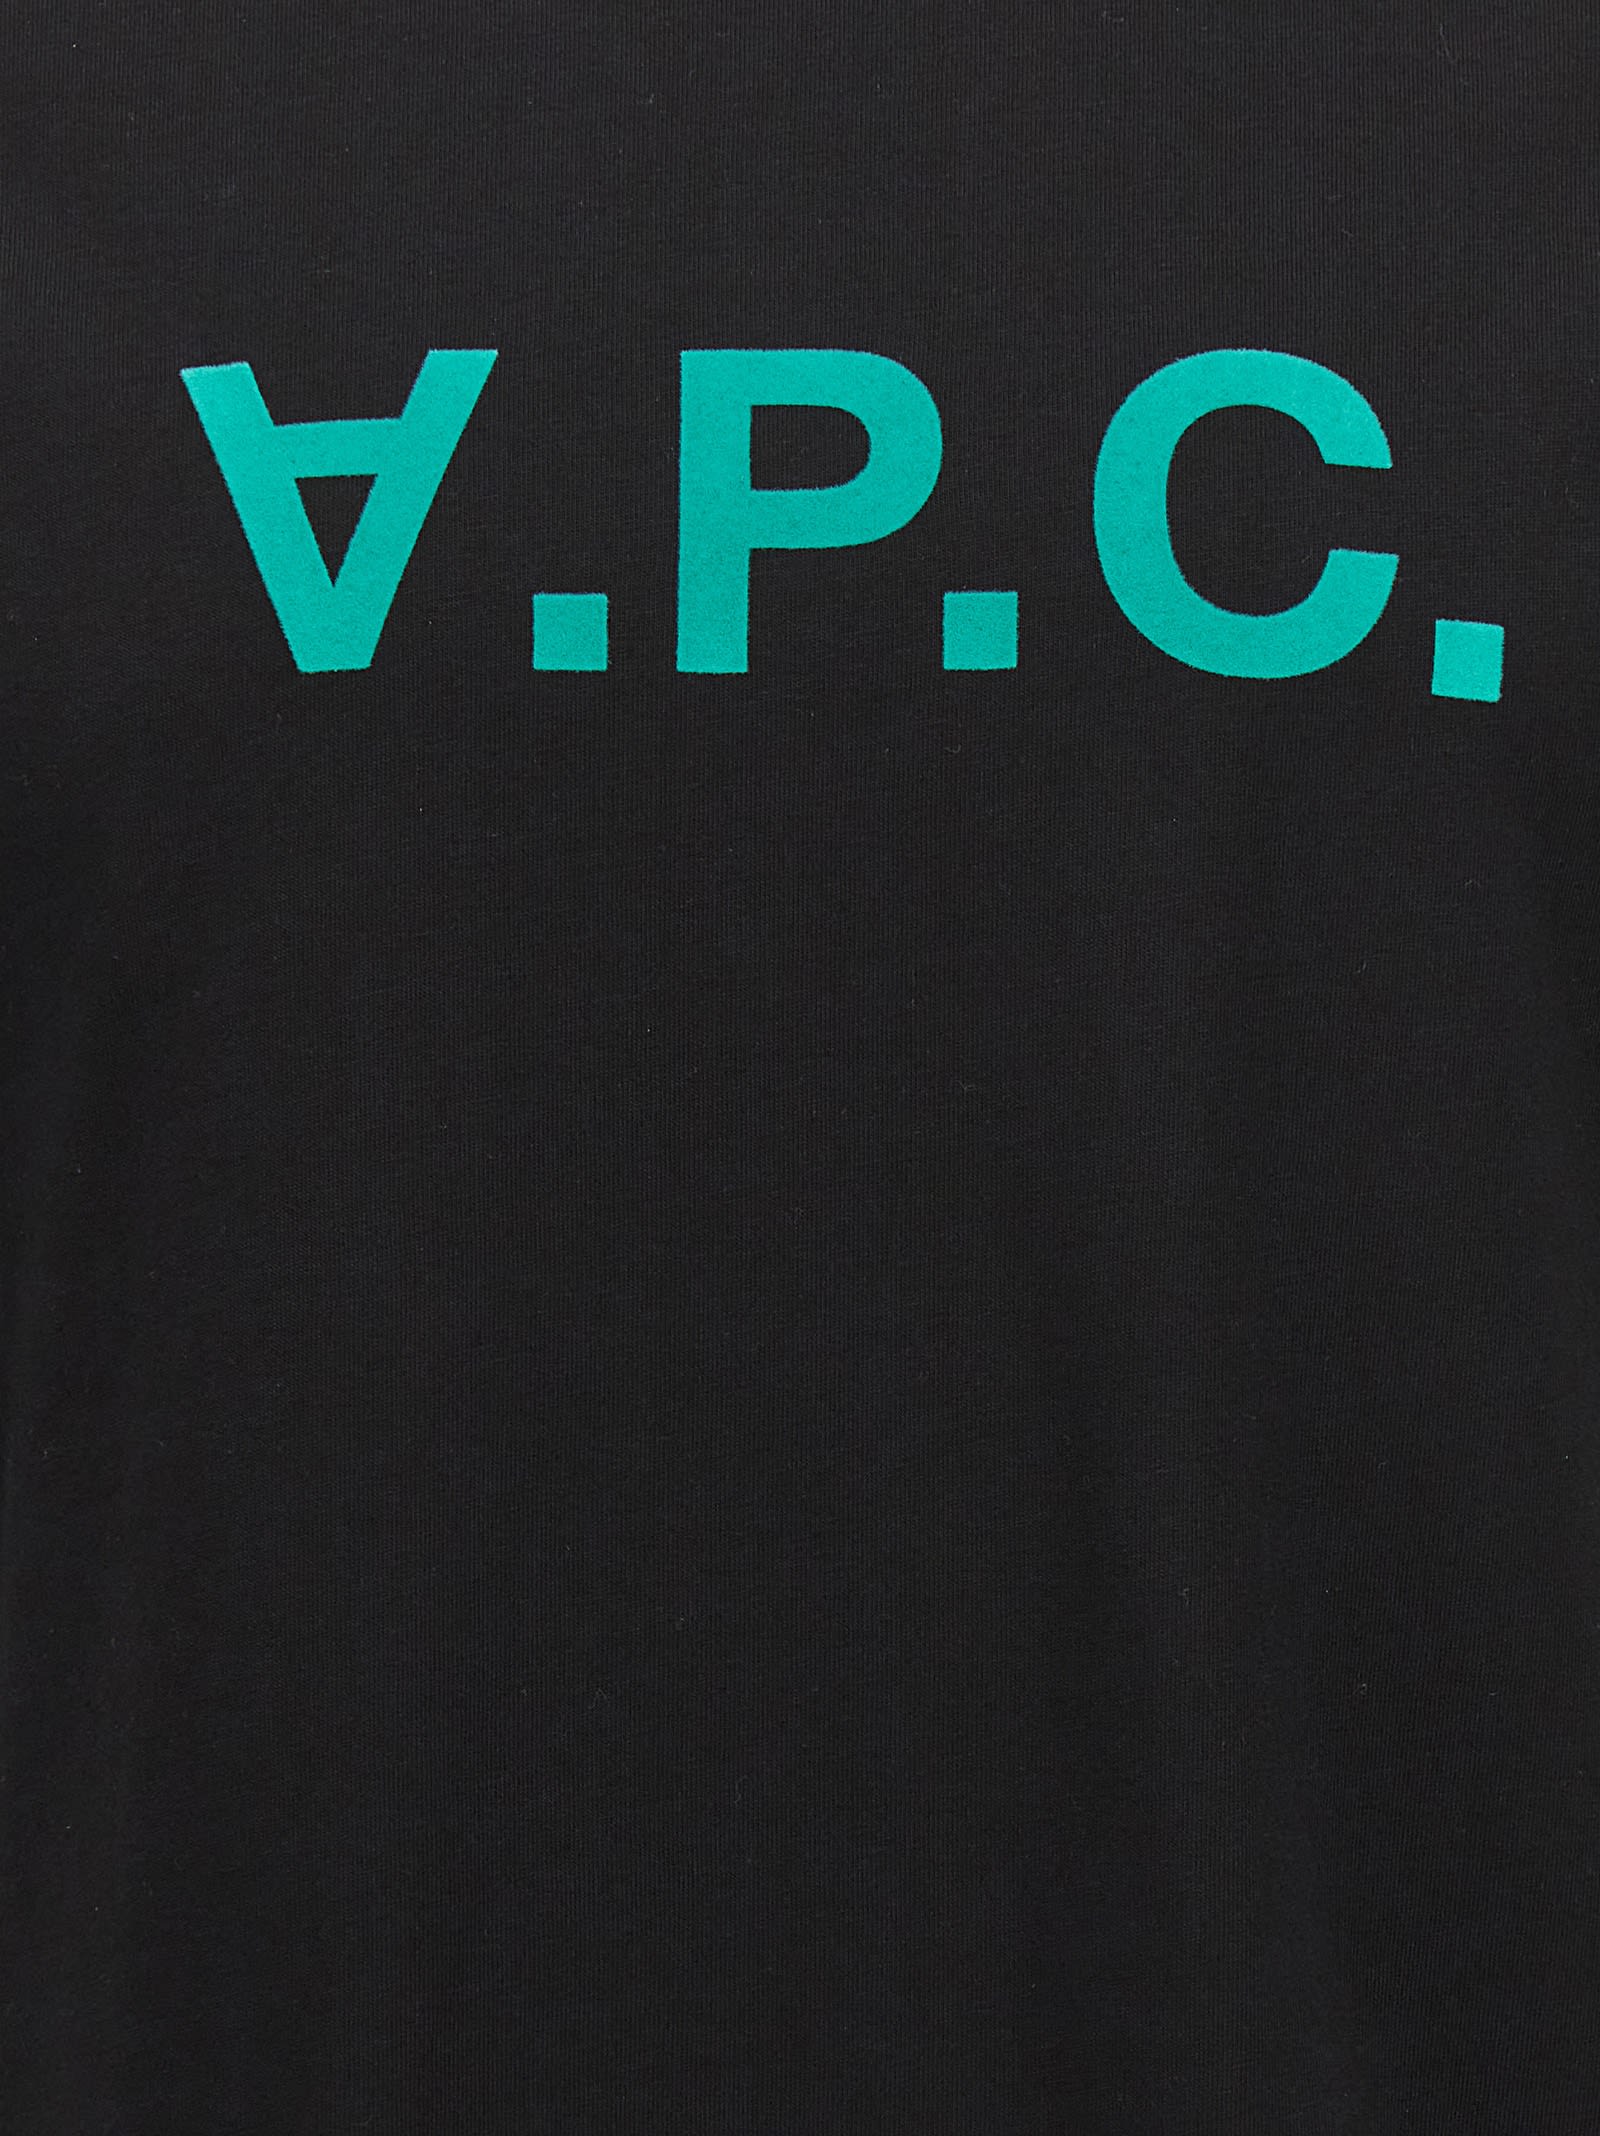 Shop Apc Vpc T-shirt A.p.c.